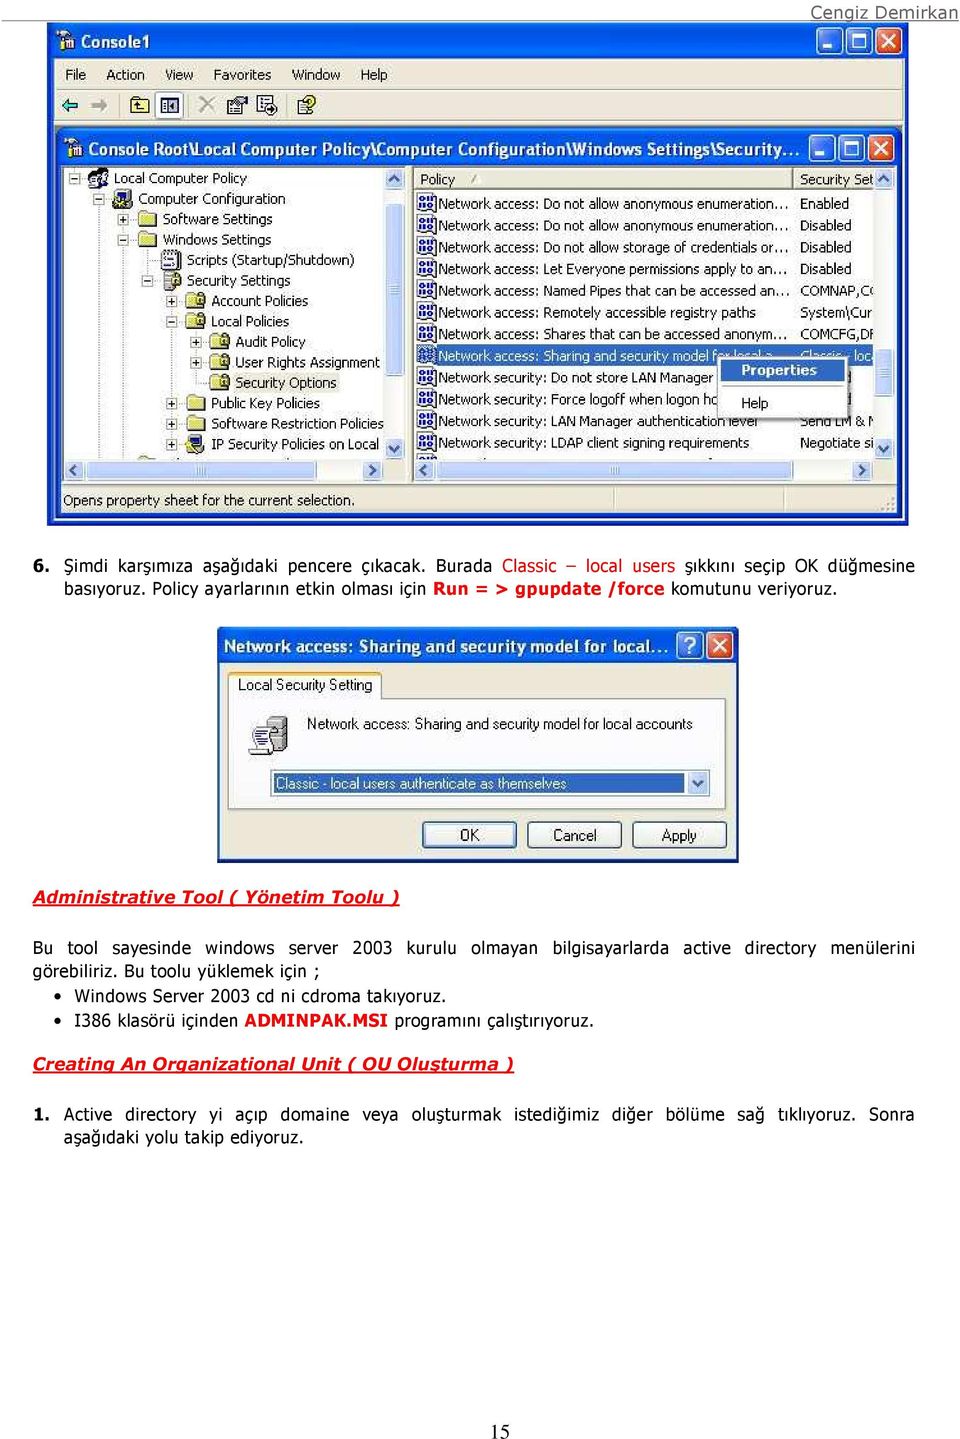 Administrative Tool ( Yönetim Toolu ) Bu tool sayesinde windows server 2003 kurulu olmayan bilgisayarlarda active directory menülerini görebiliriz.